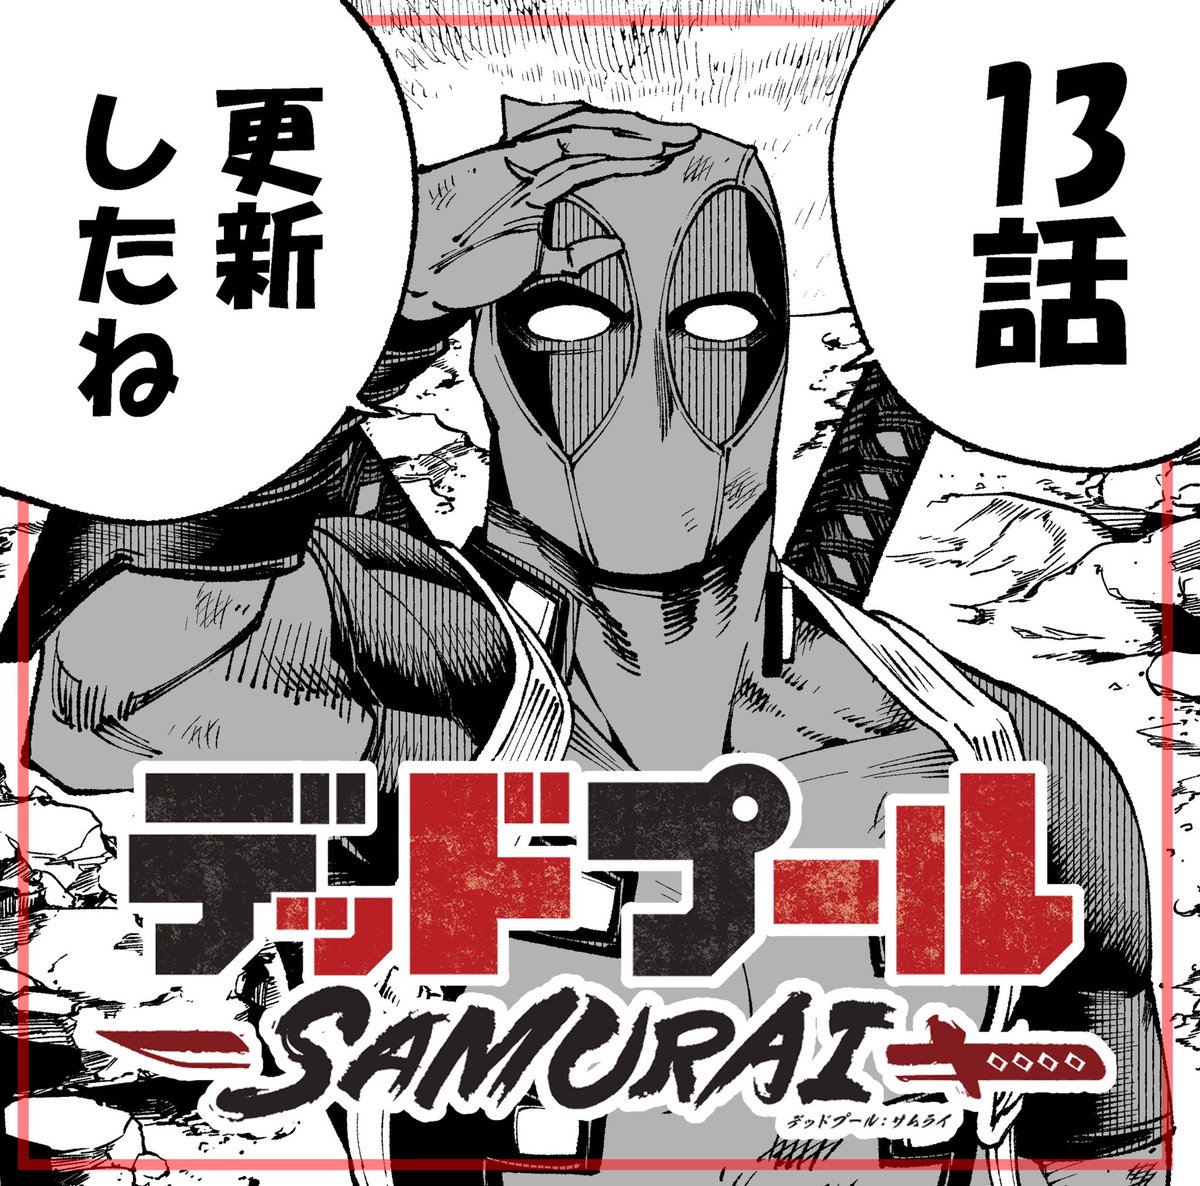 『デッドプール :SAMURAI』の13話目が公開されました。
よかったら読んで下さい!

最終決戦の中、現れた助っ人は…?

https://t.co/B5IKE9BPBy

The episode13 of "Deadpool: SAMURAI" has been released!
#デッドプールSAMURAI
#ジャンププラス 